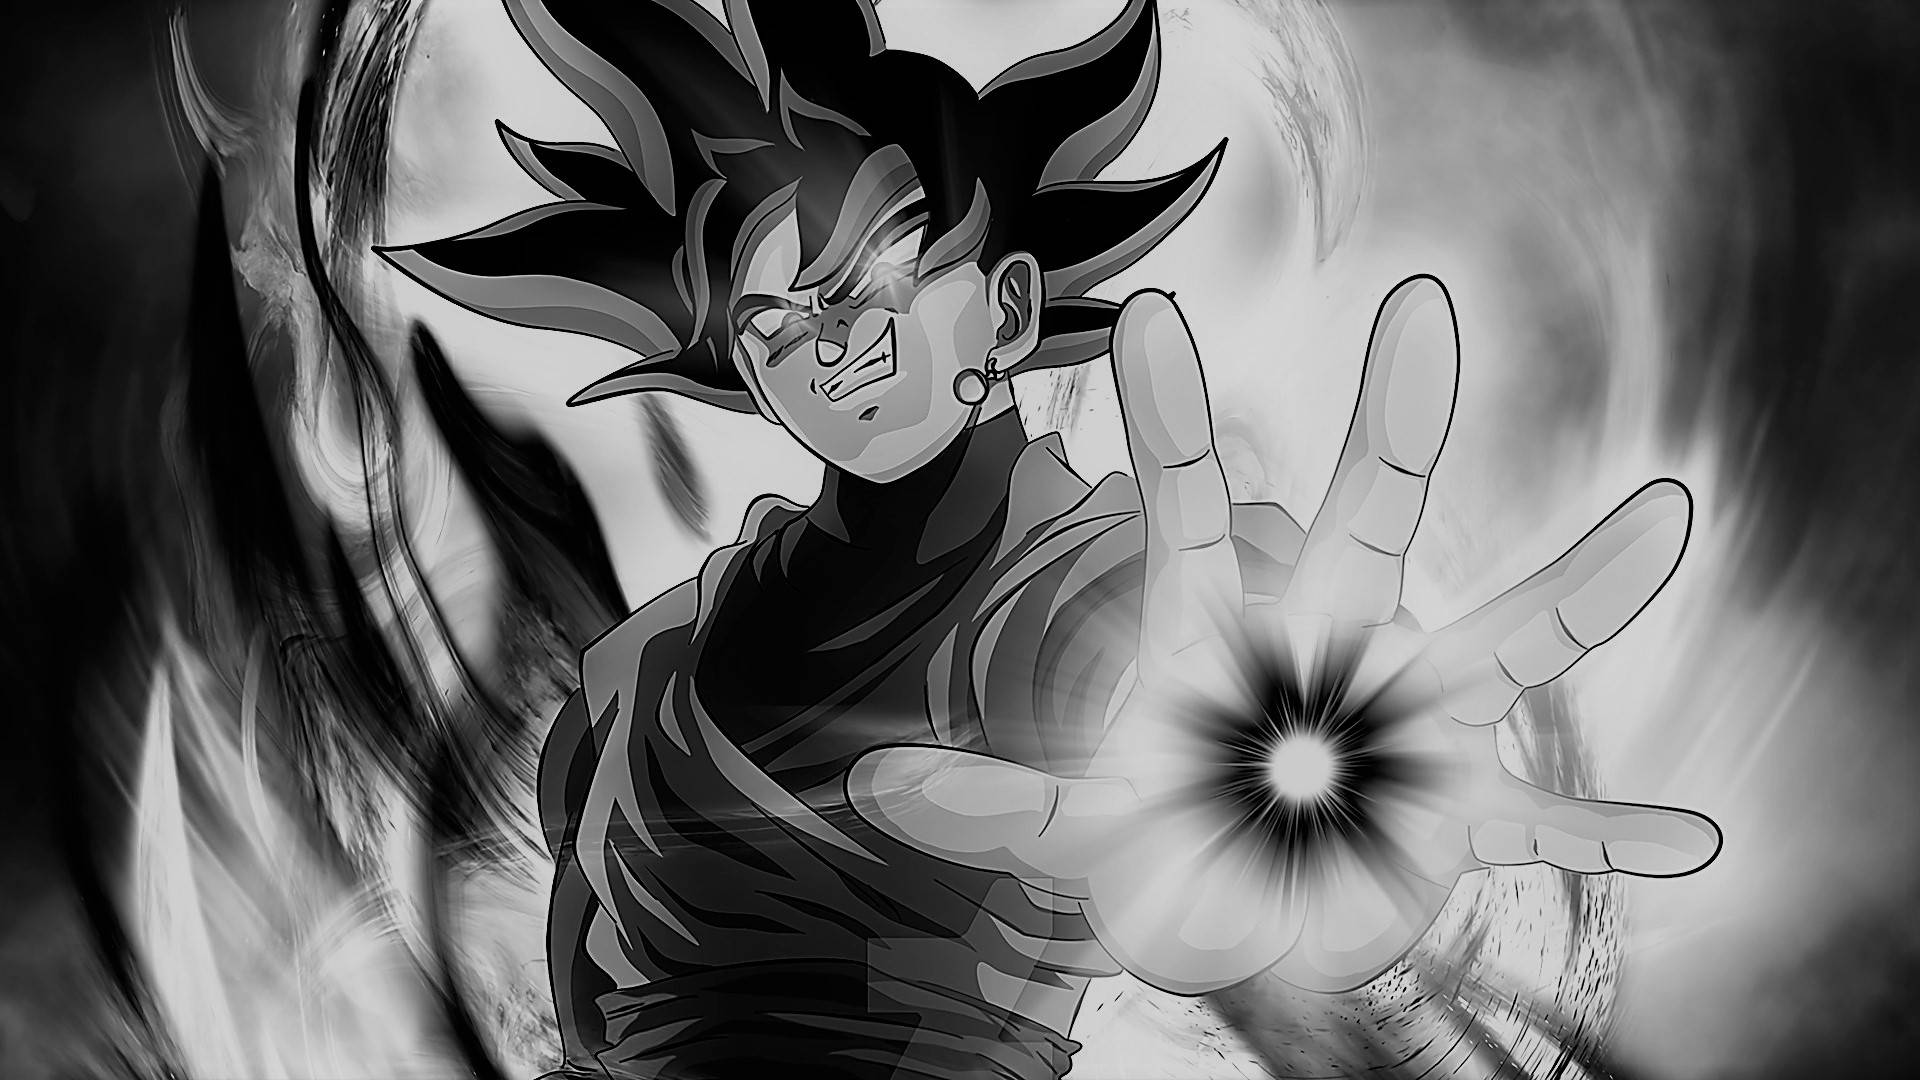 Habilidadde Goku En Blanco Y Negro. Fondo de pantalla